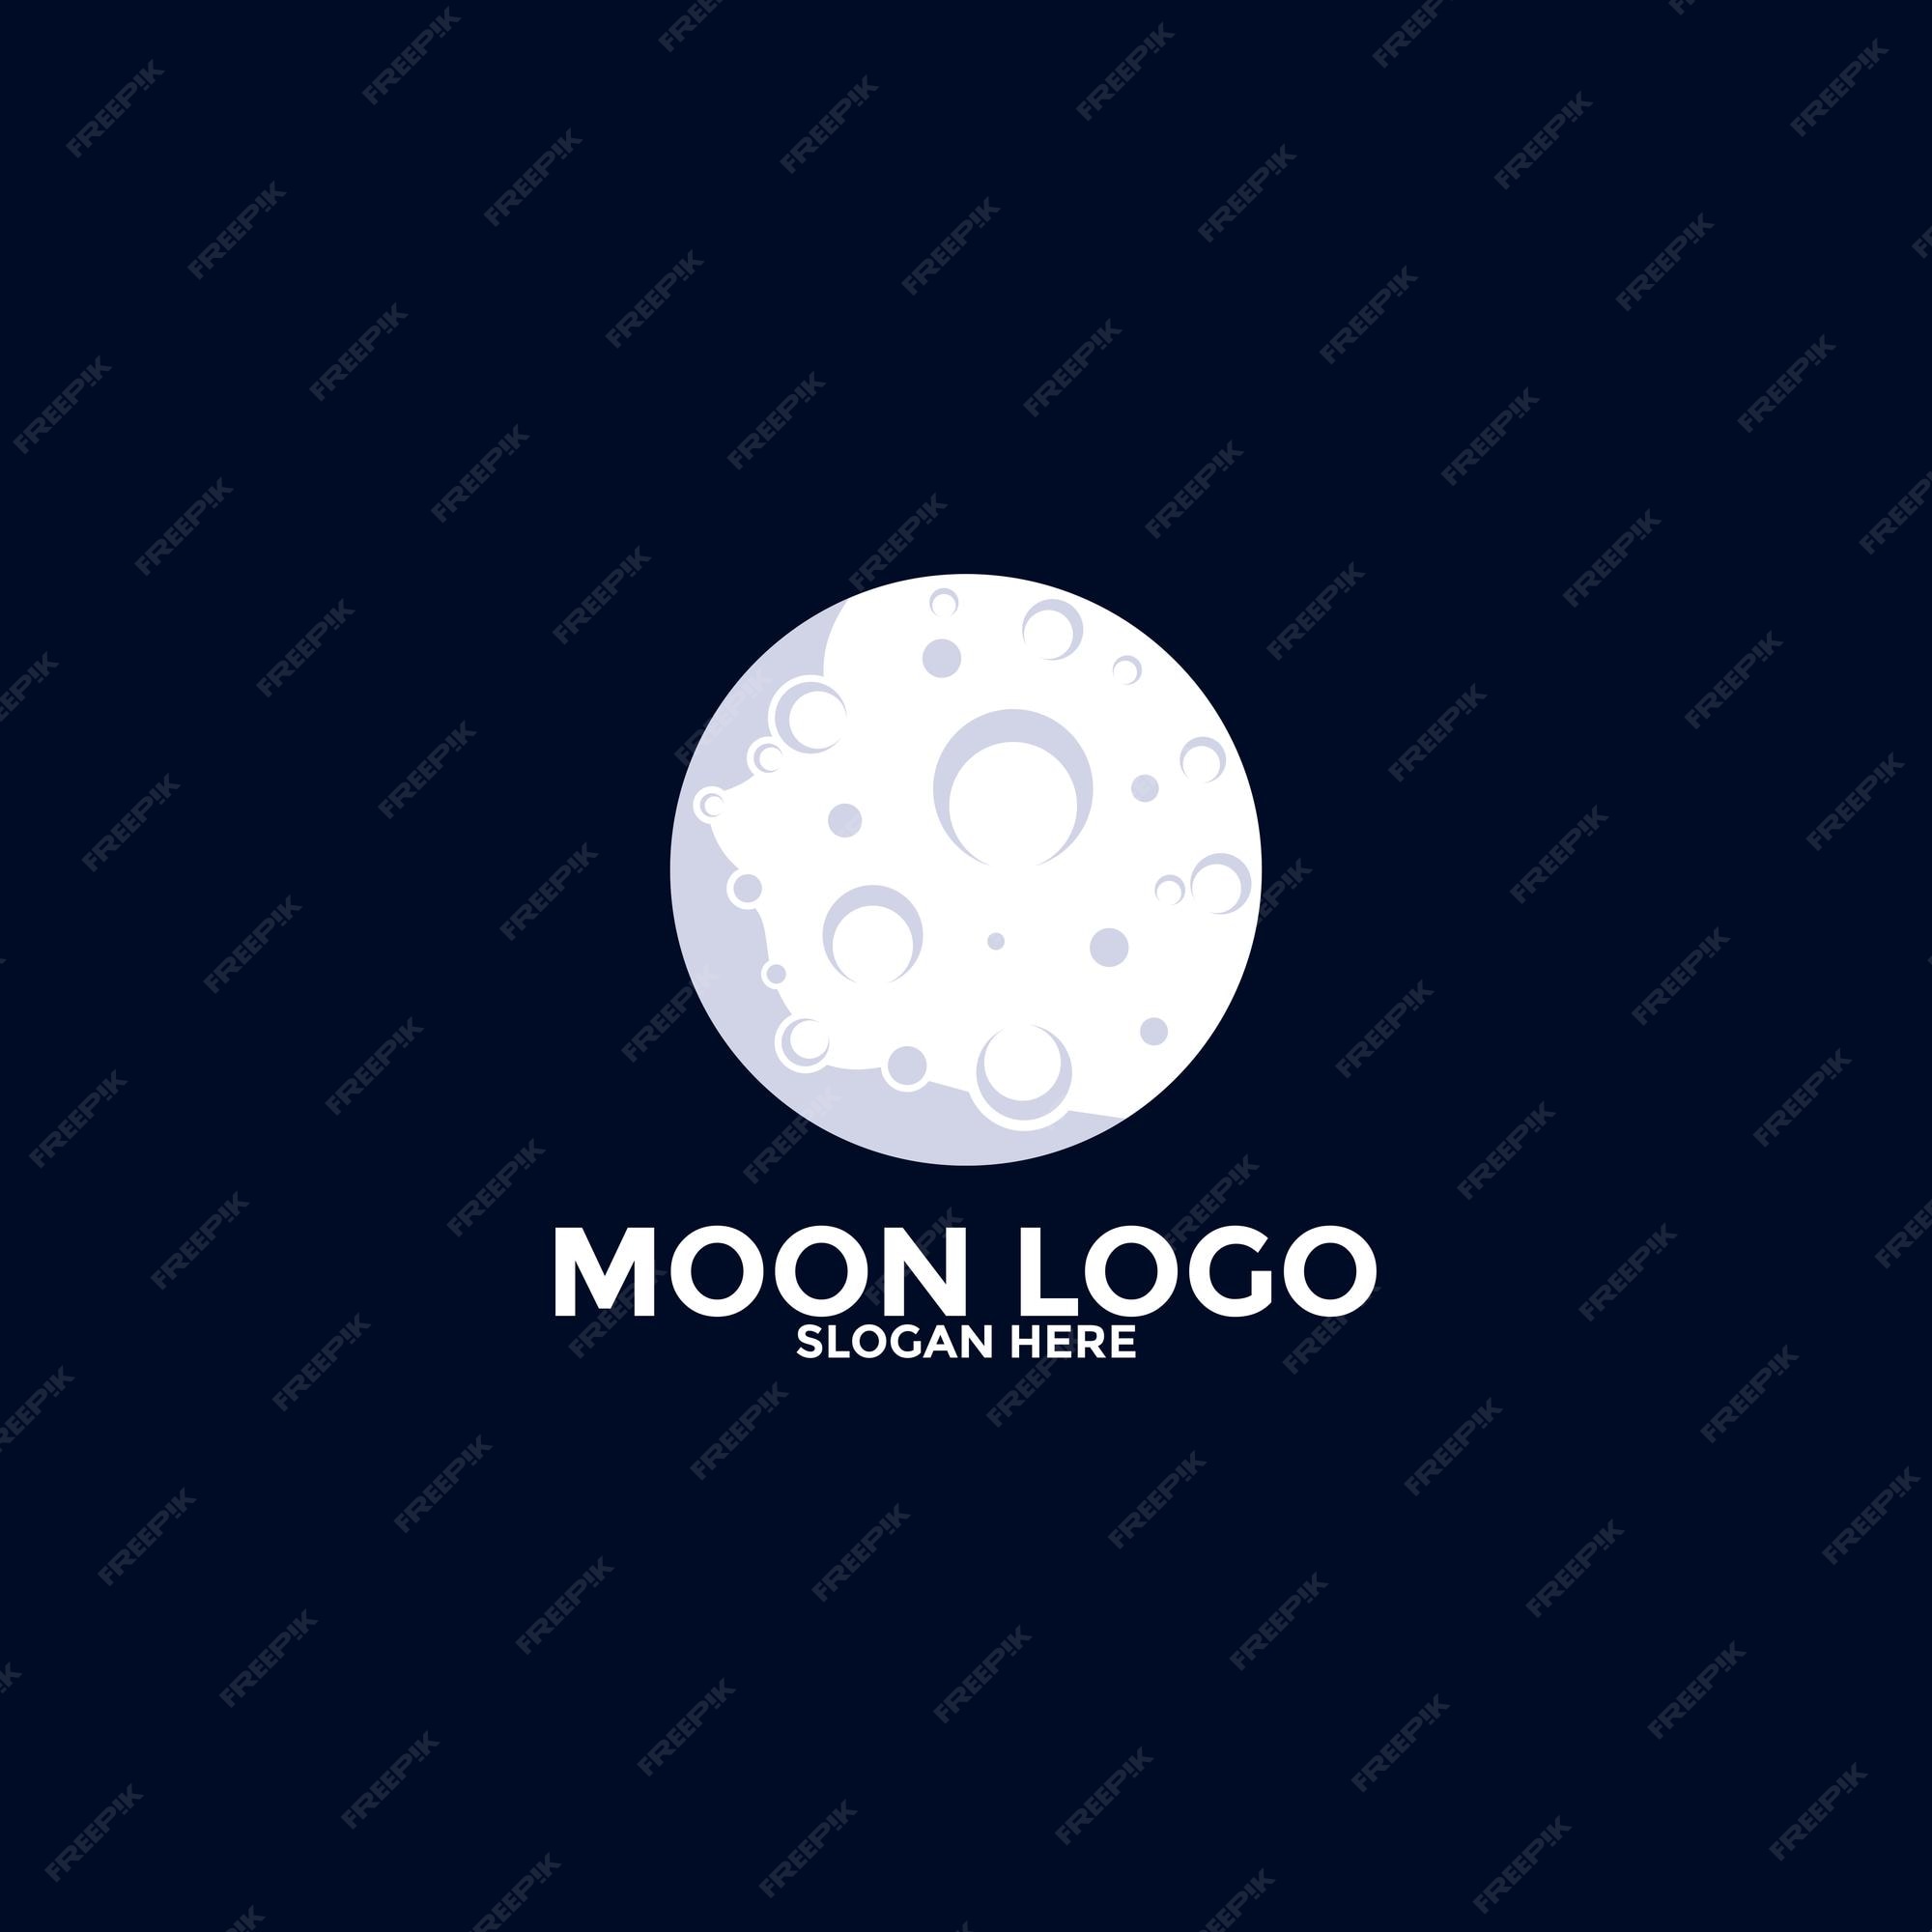 Premium Vector | Moon Logo Vector Icon Simple Moon Logo Design Template